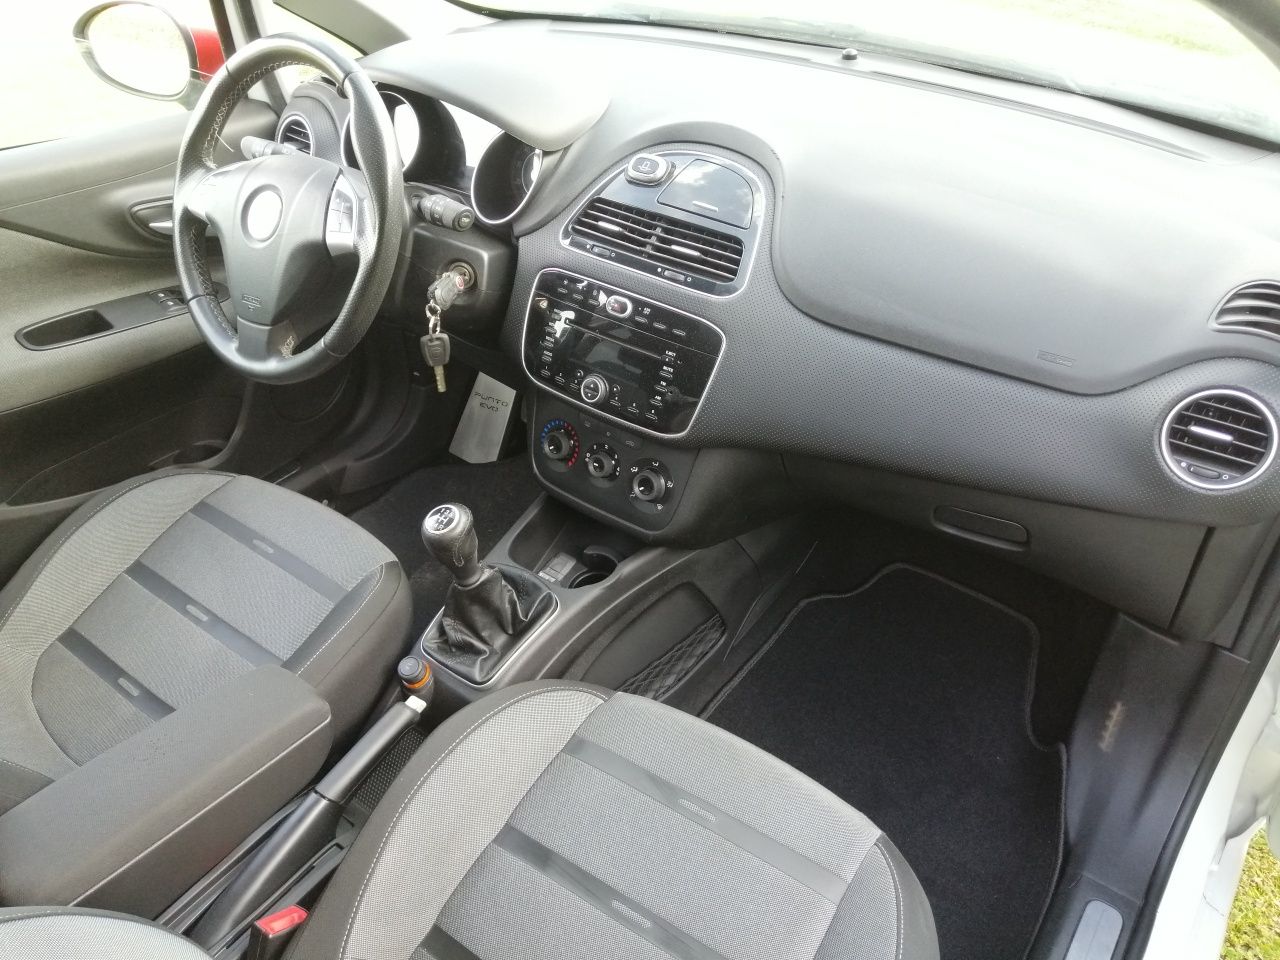 Fiat Punto Evo 1.4 turbo 135 KM 5 drzwi Alufelgi Klimatyzacja